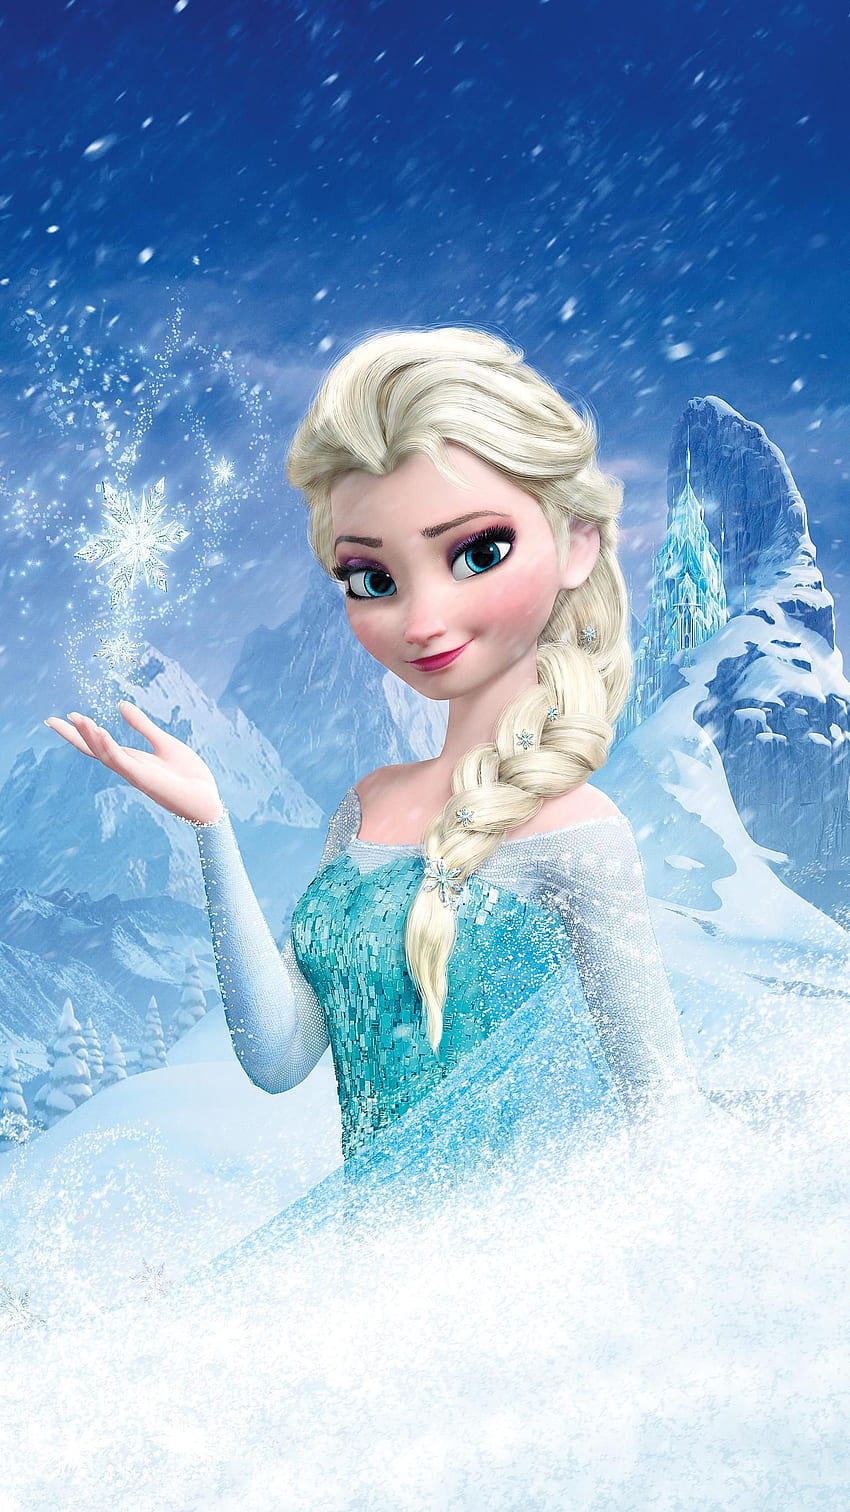 Kraina lodu (2013) Telefon. Filmomania. Disney Frozen Elsa art, Frozen plakat, Frozen Tapeta na telefon HD